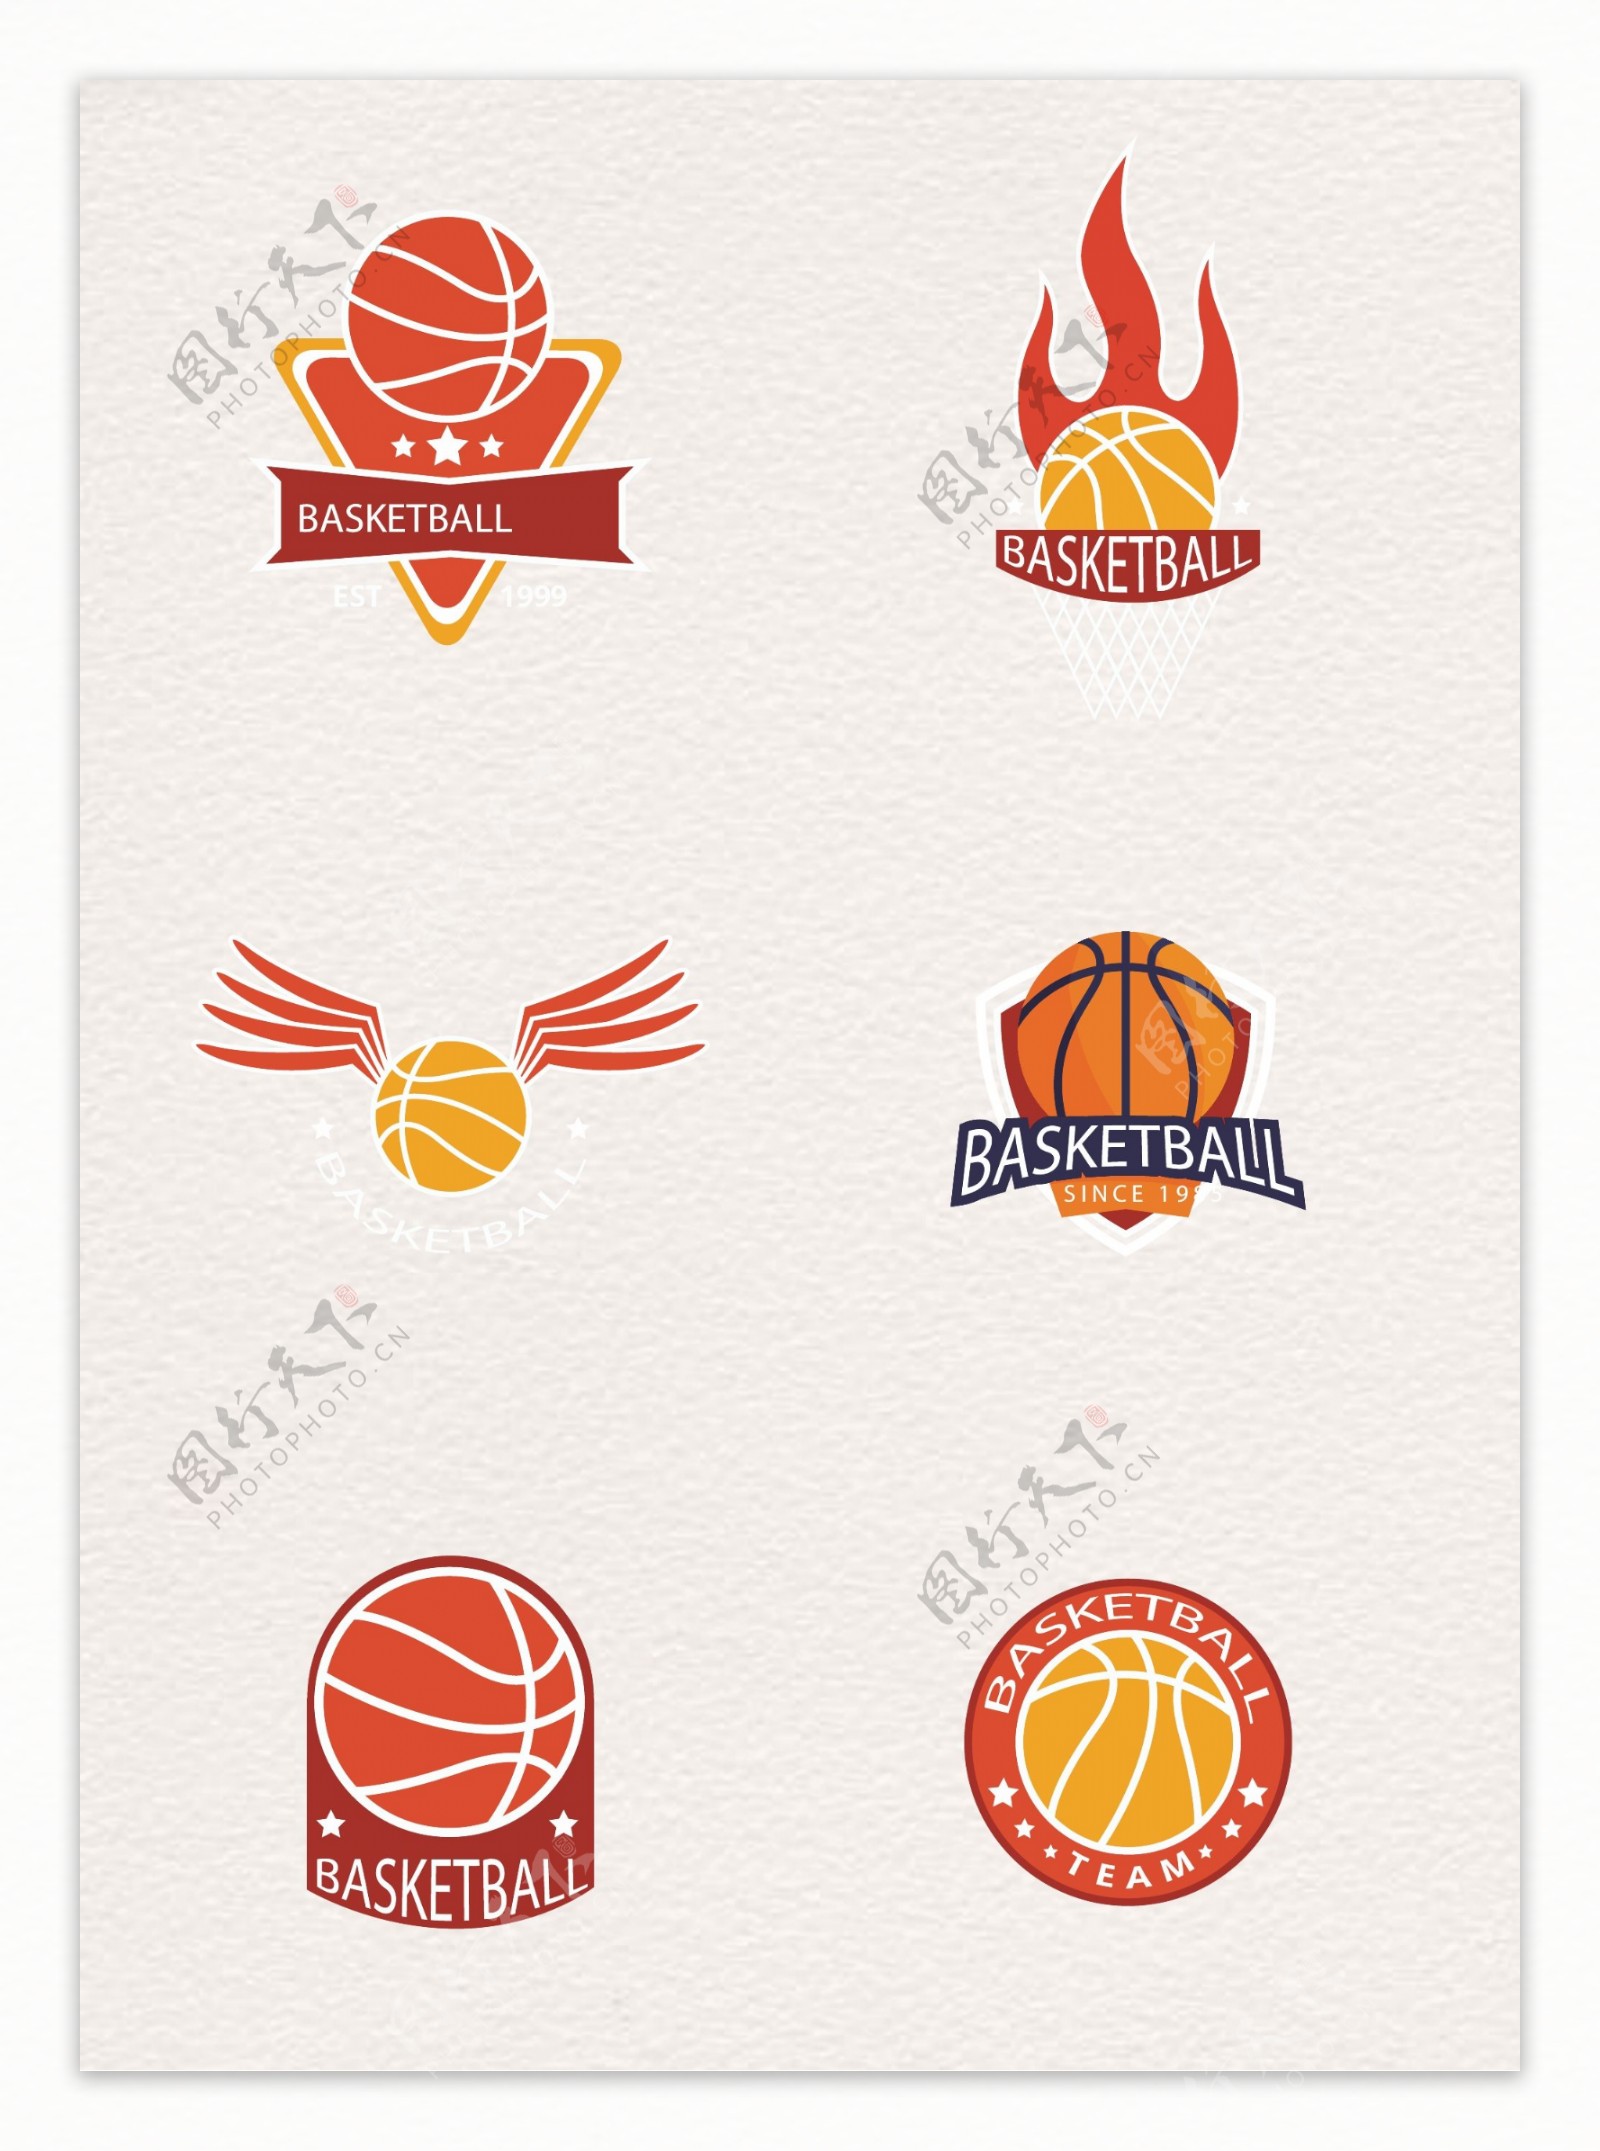 6组卡通篮球标志设计